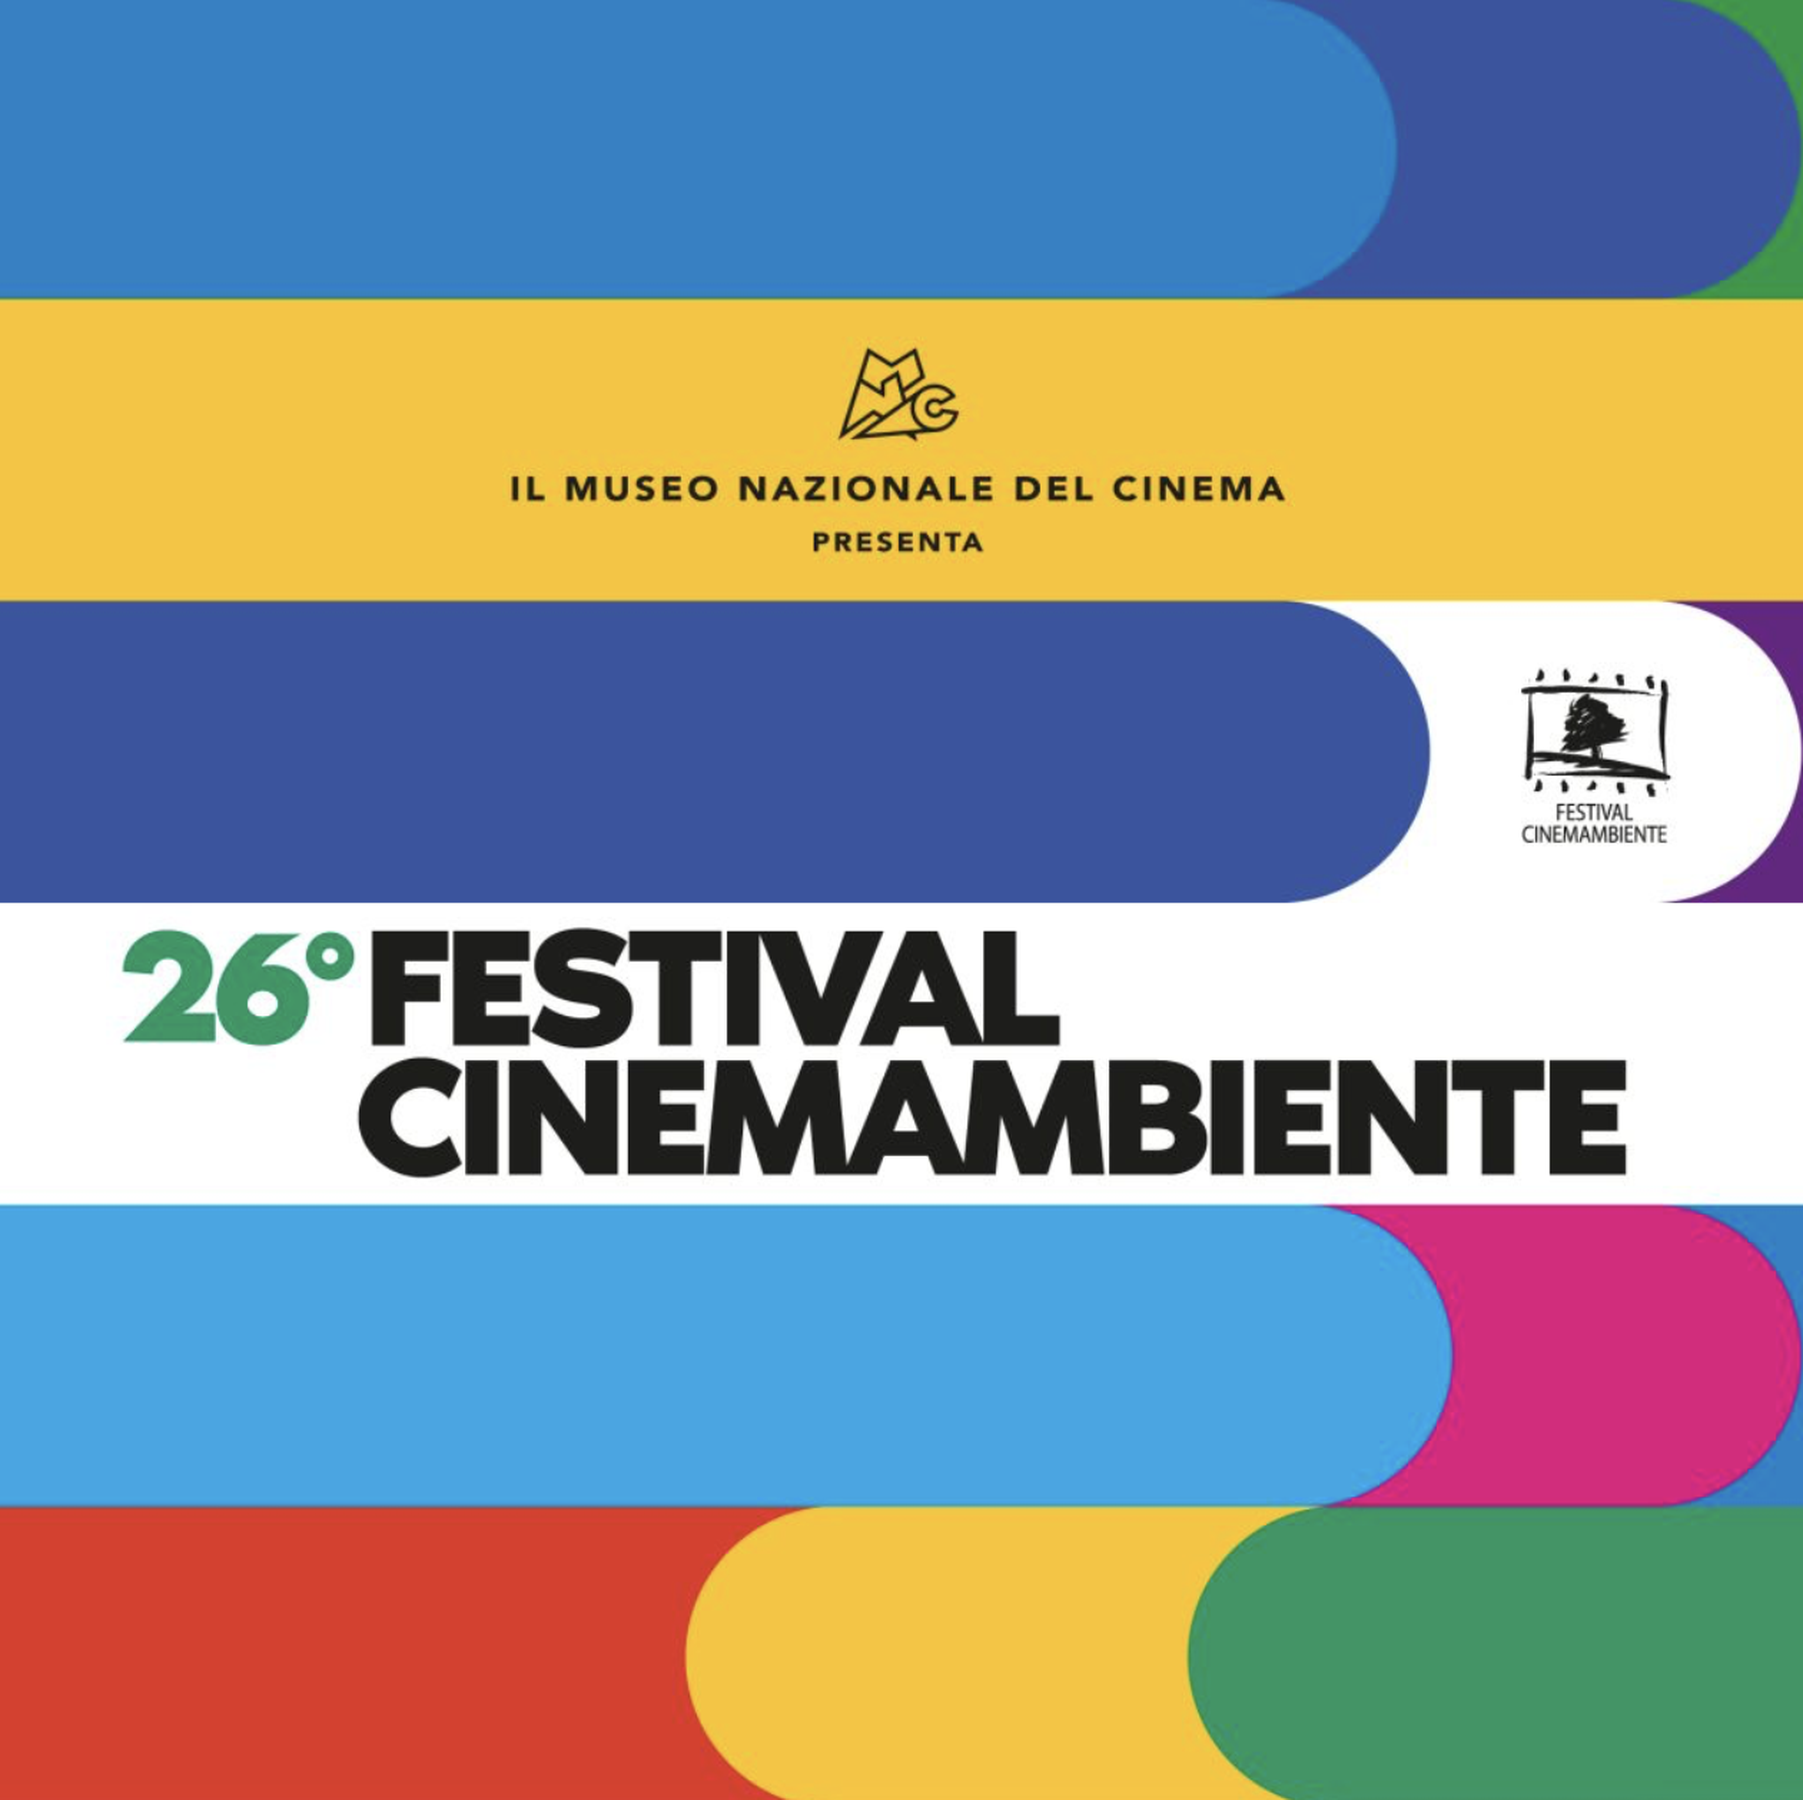 27th Environmental Film Festival